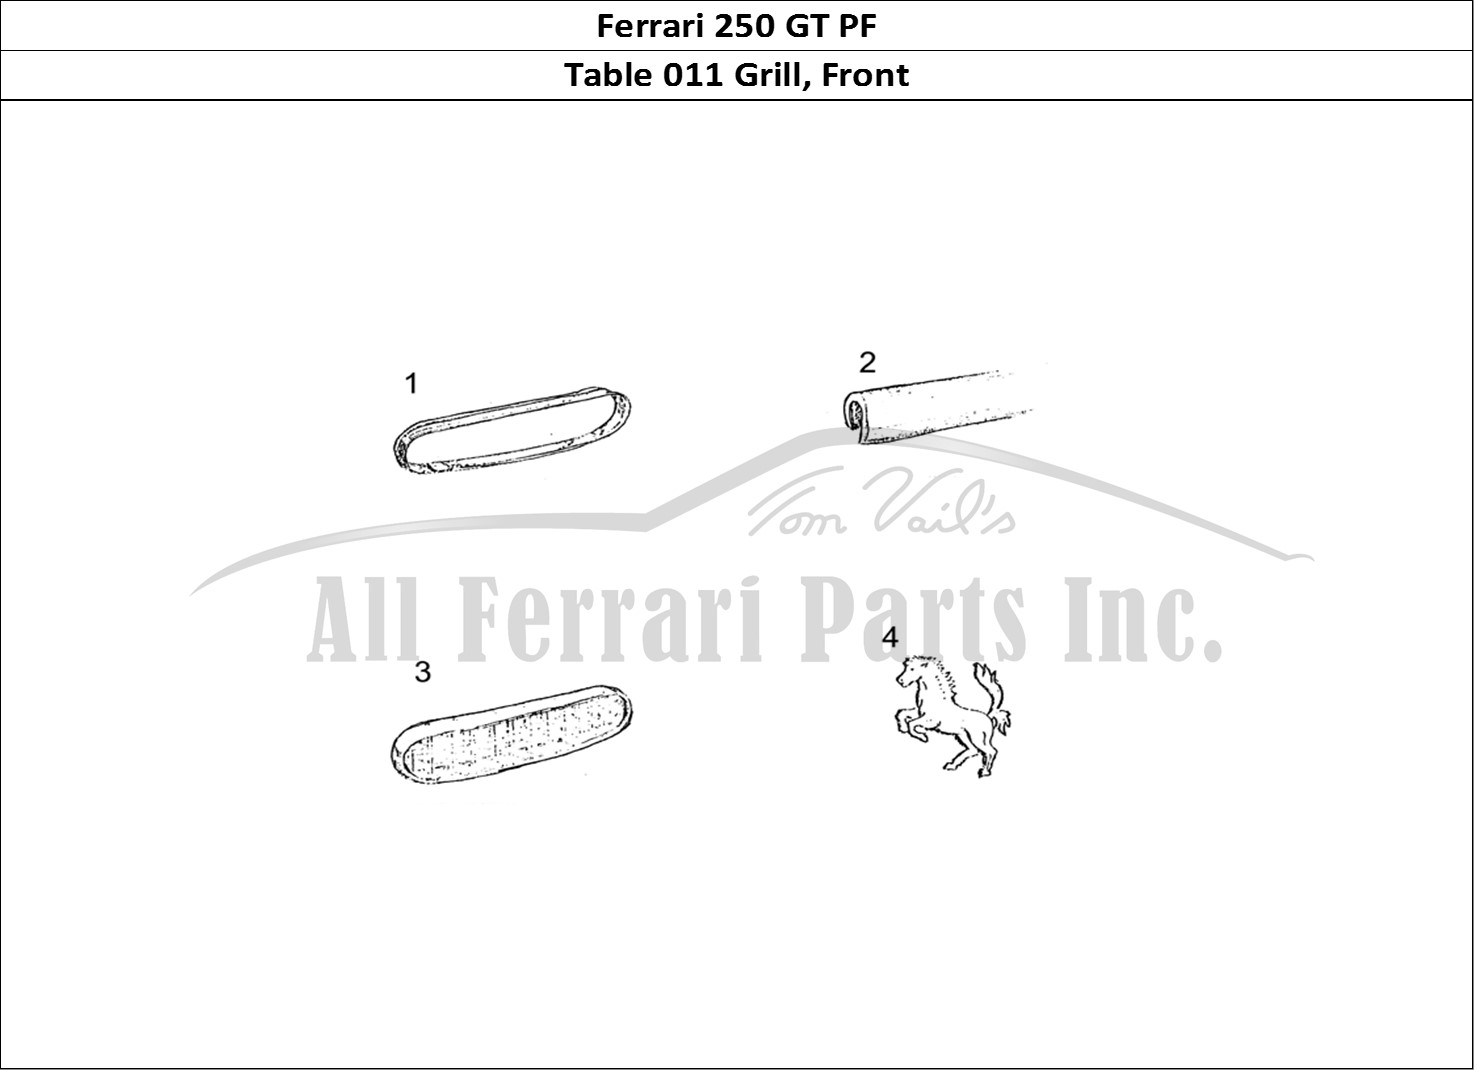 Ferrari Parts Ferrari 250 GT (Coachwork) Page 011 Front Grill